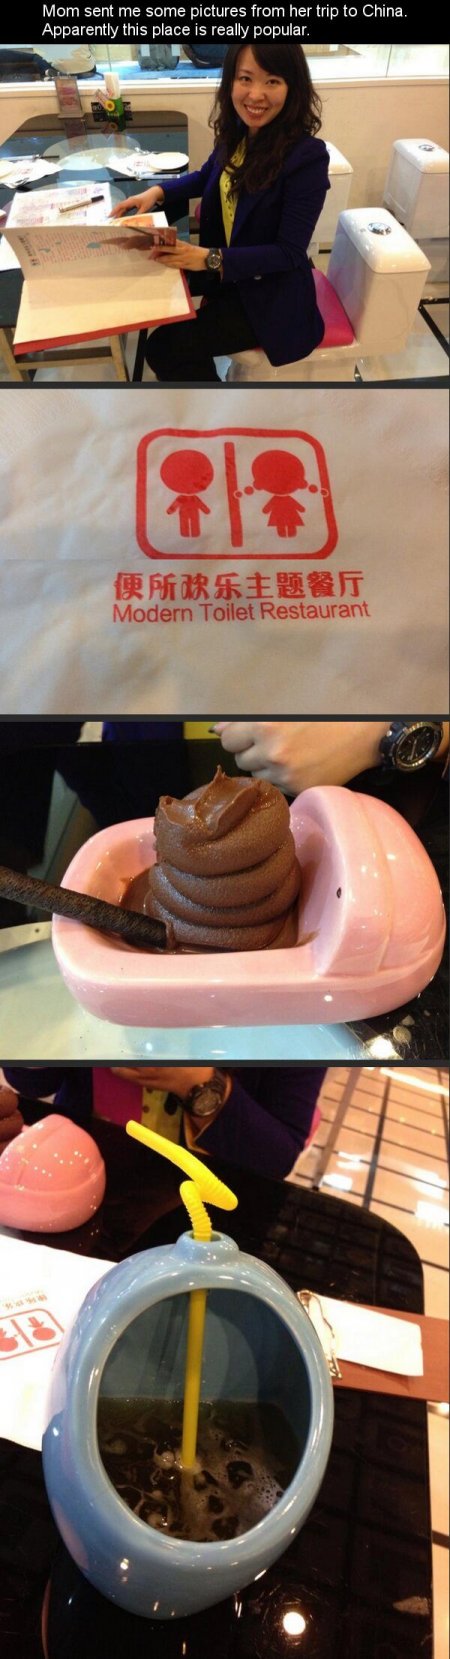 the-modern-toilet.jpg